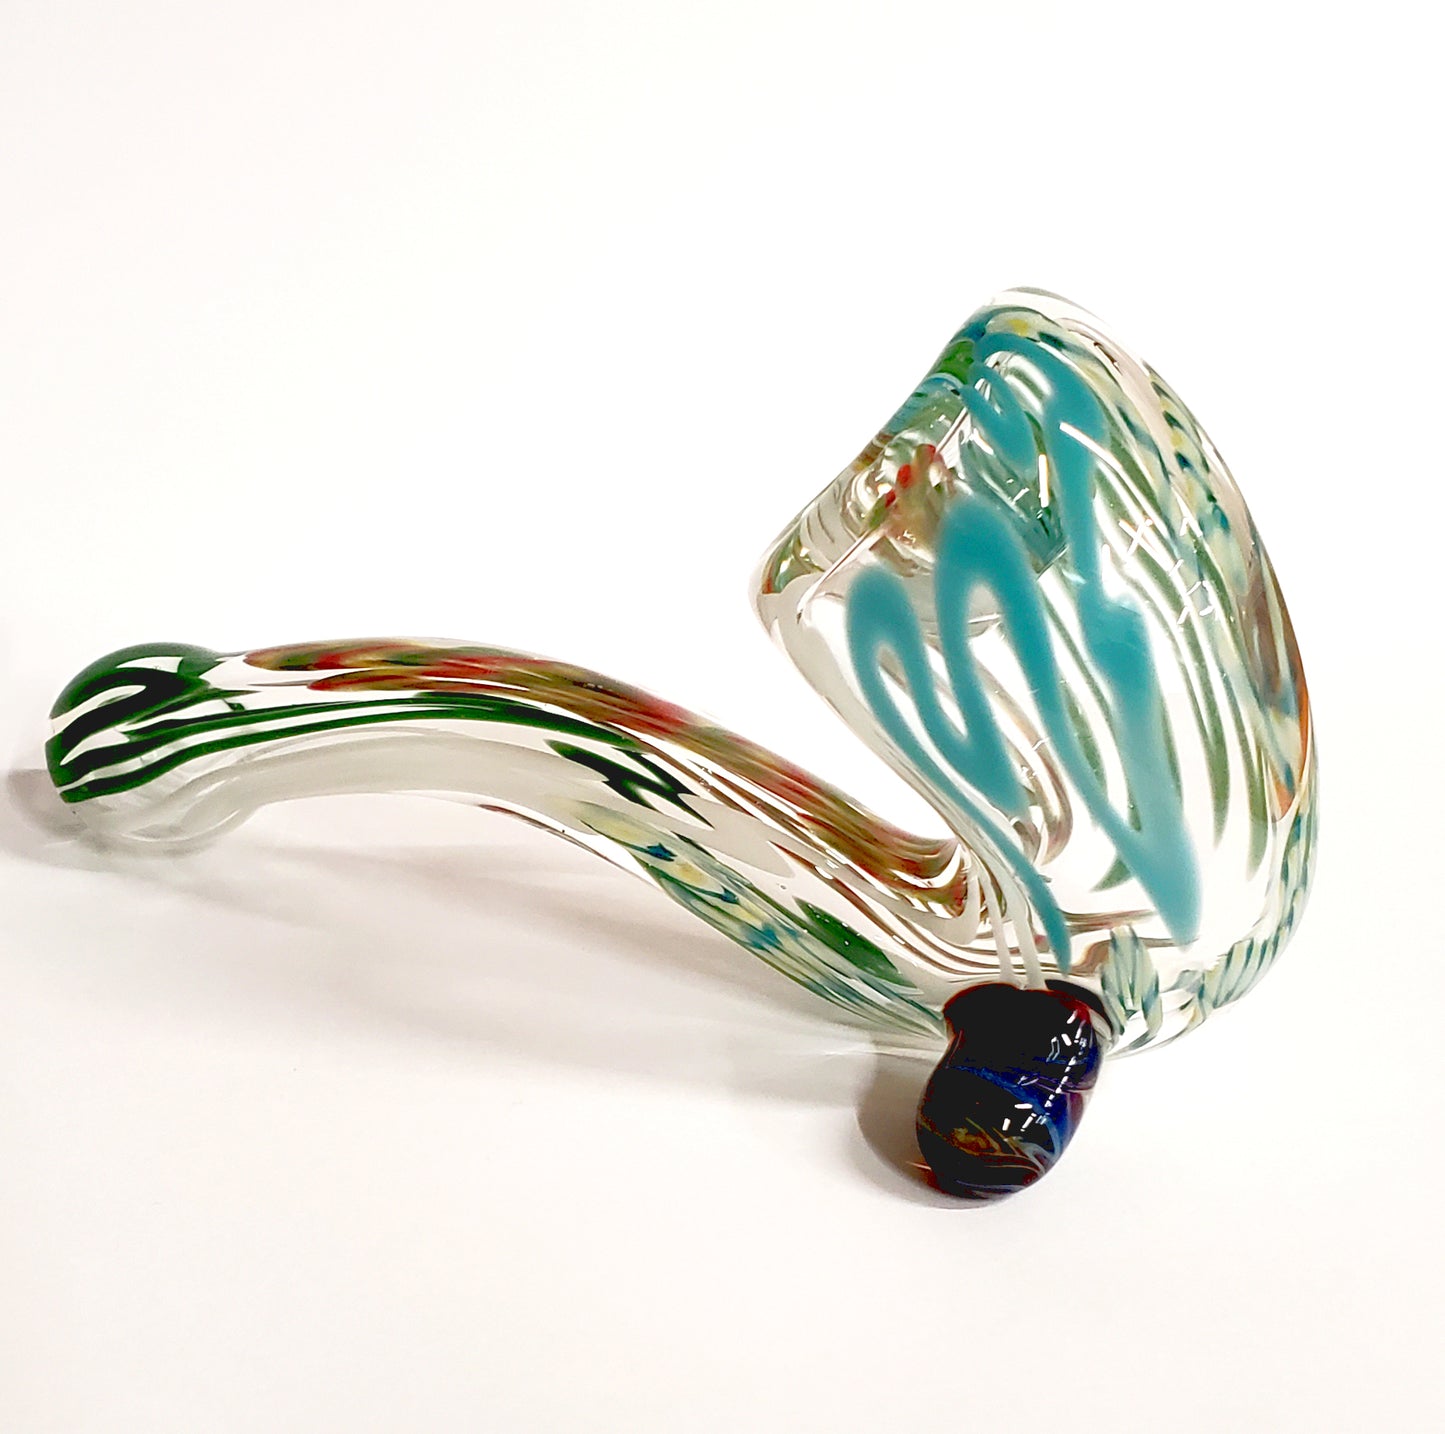 Inside Color Sherlock Glass Pipe